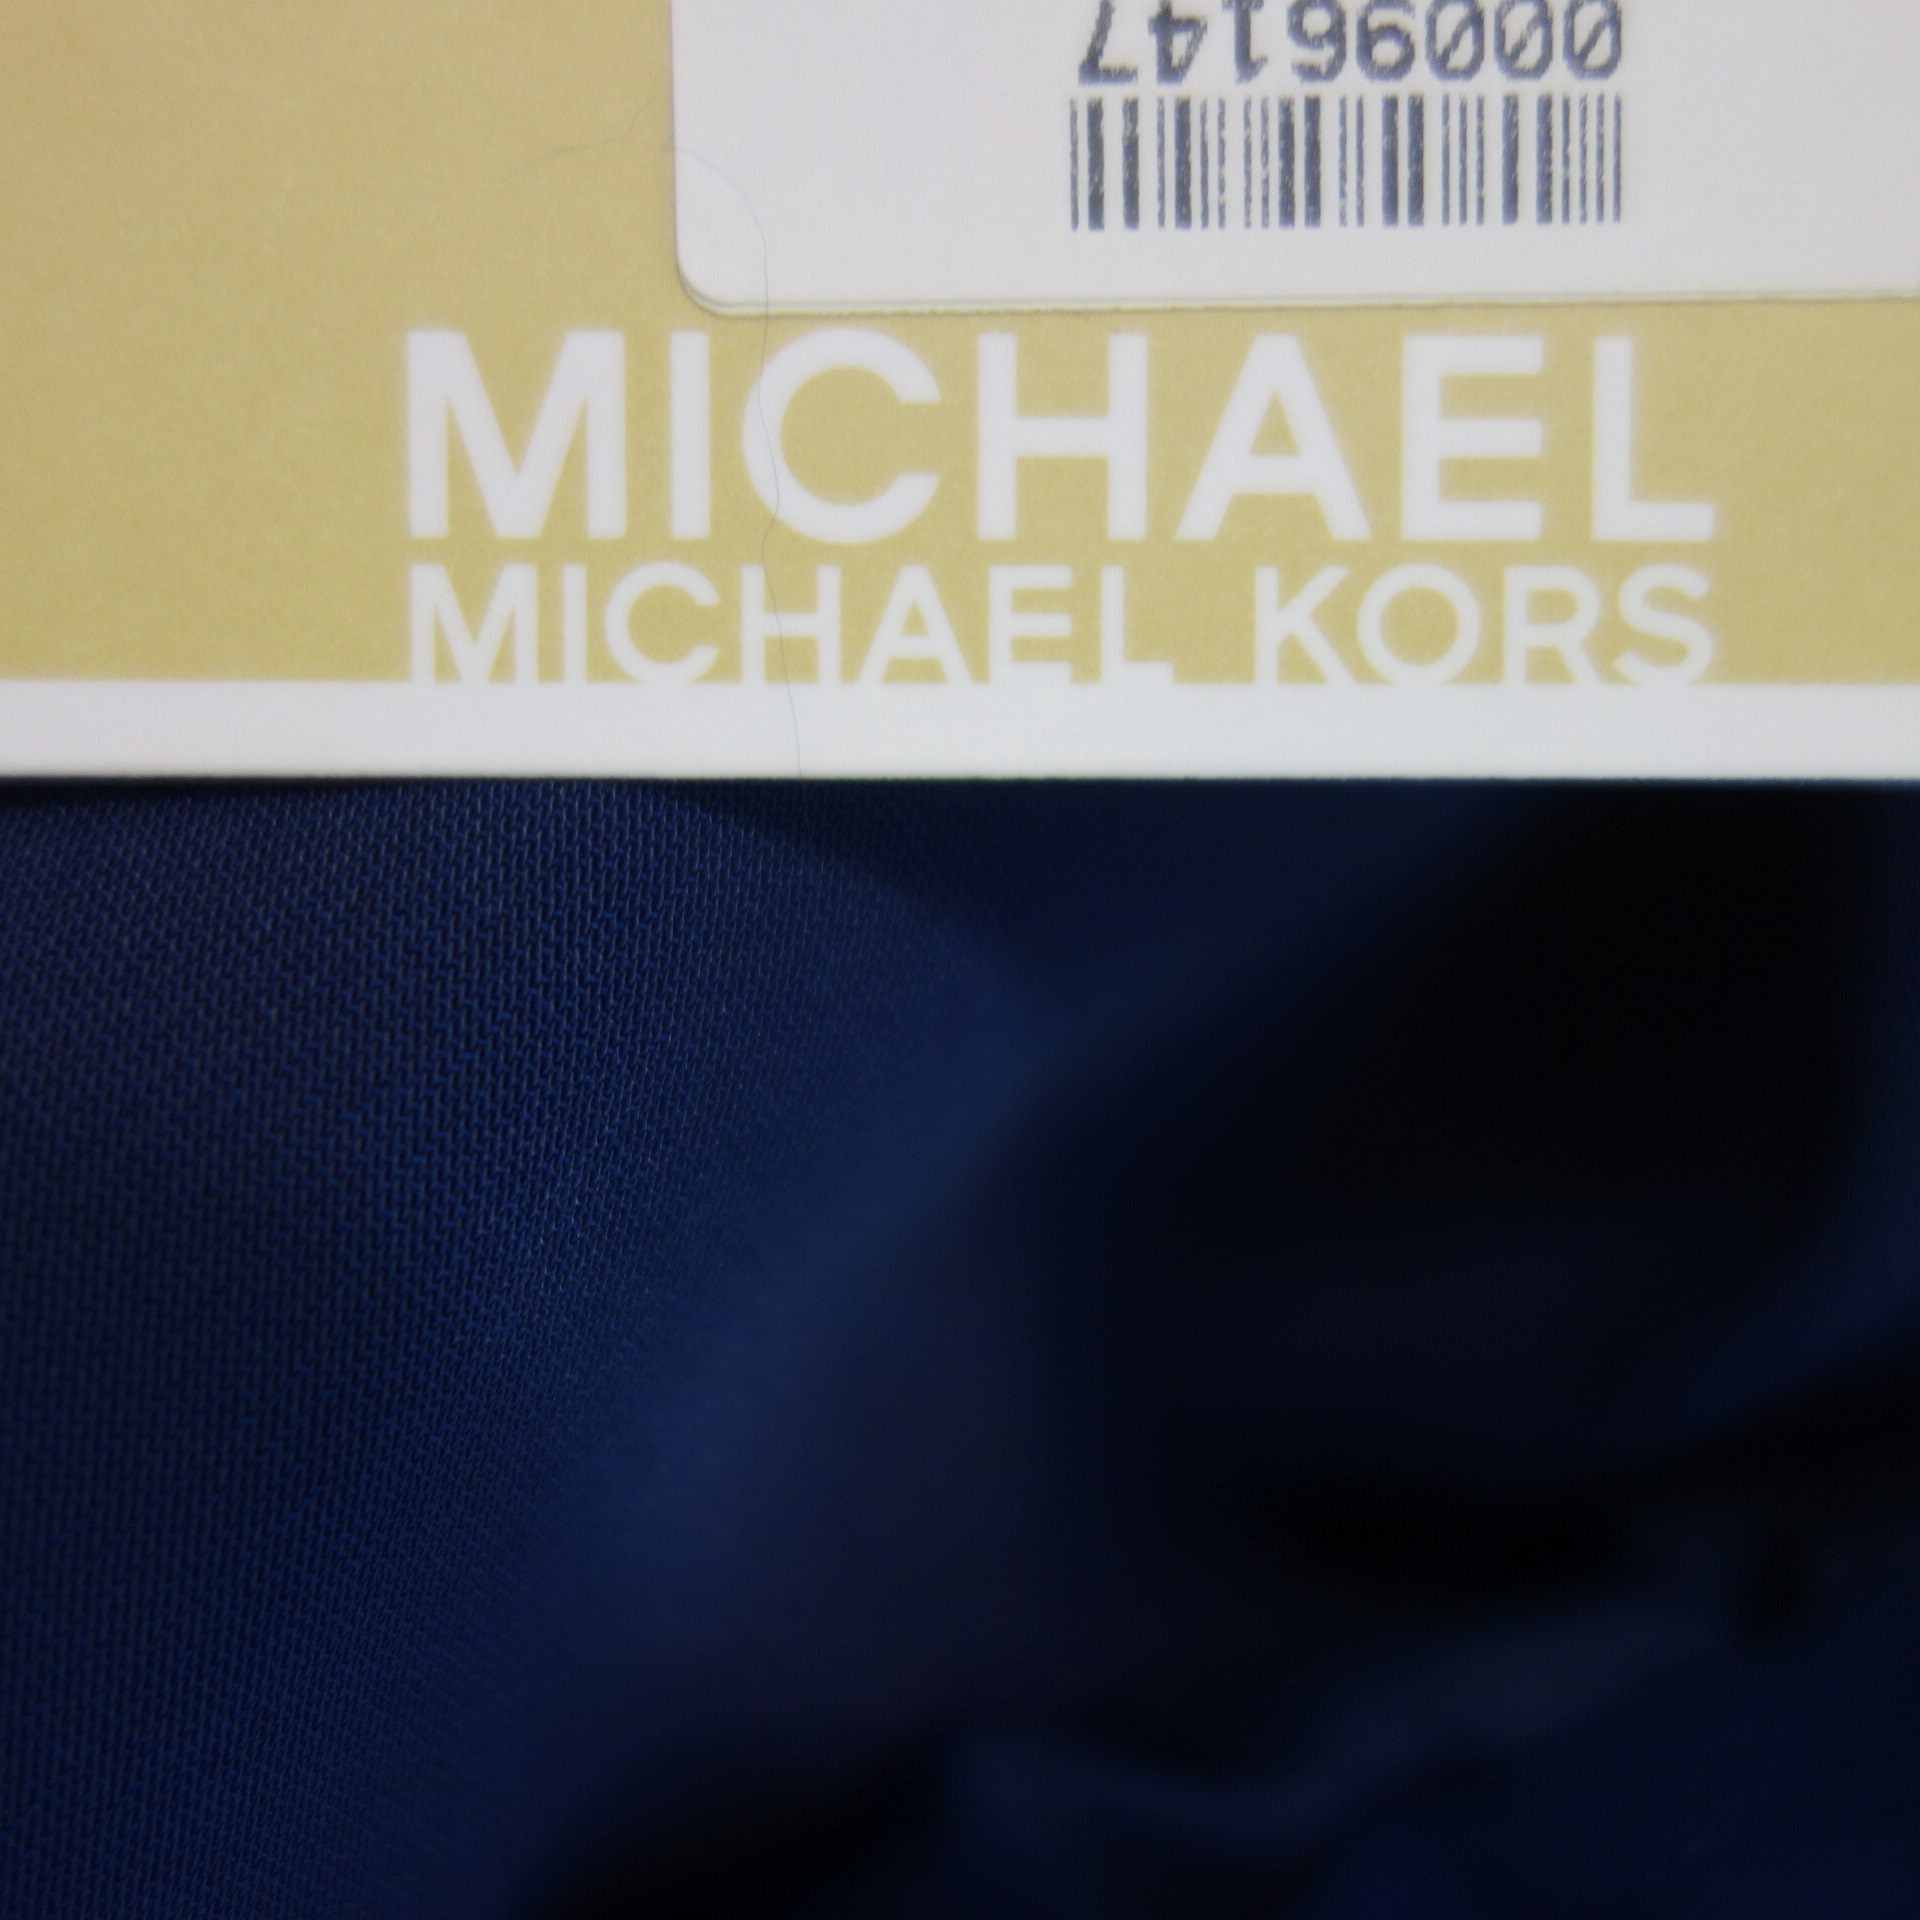 MICHAEL KORS Damen Hose  Stoffhose Blau XL Elastischer Bund Paperbag Straight